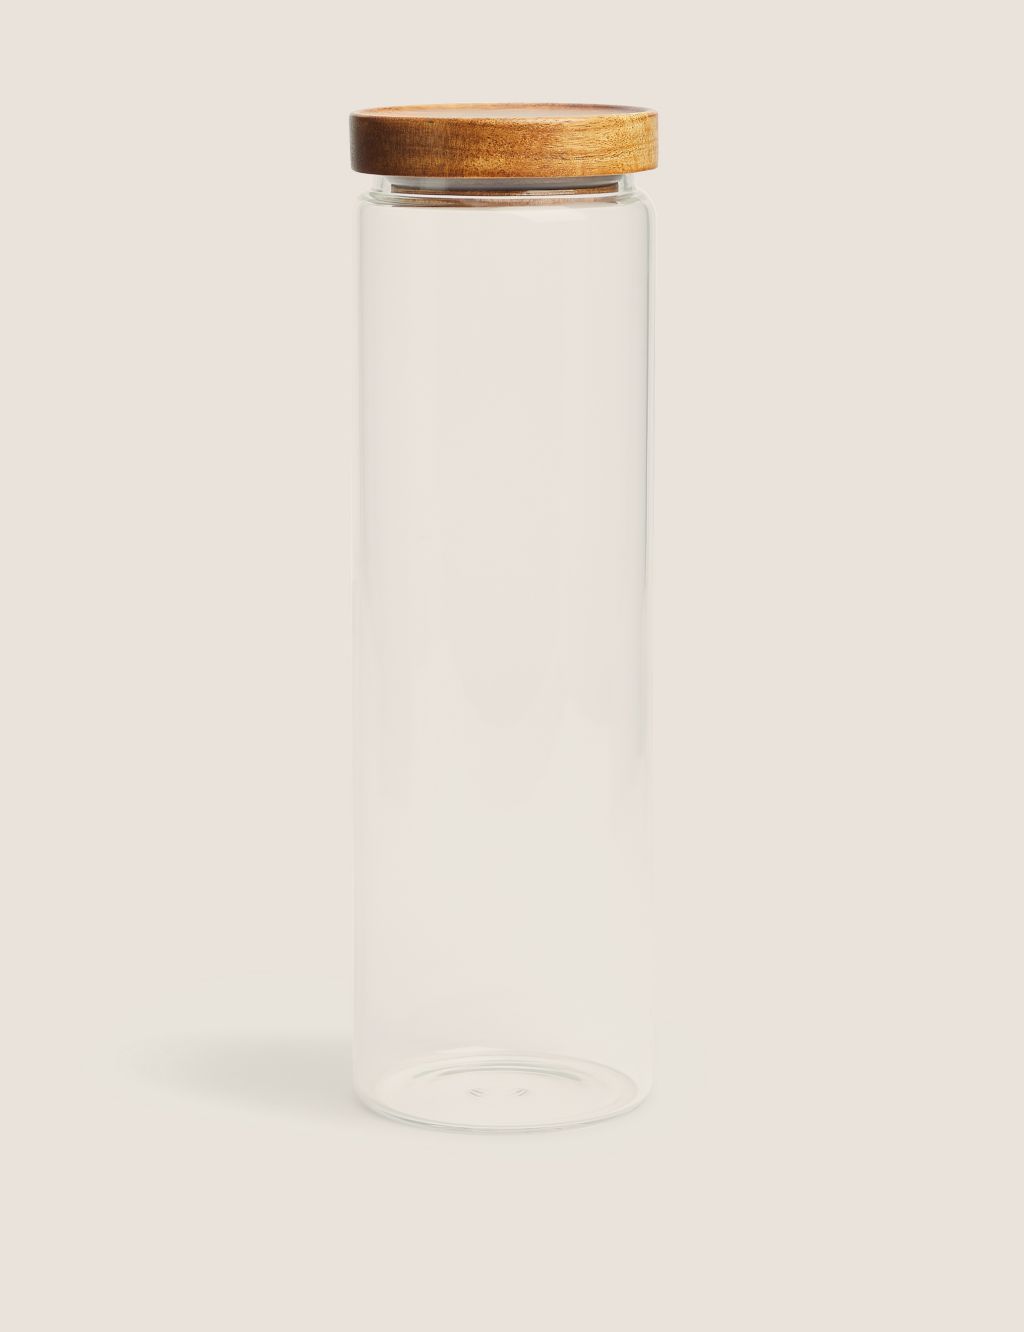 Extra Large Glass Storage Jar image 1